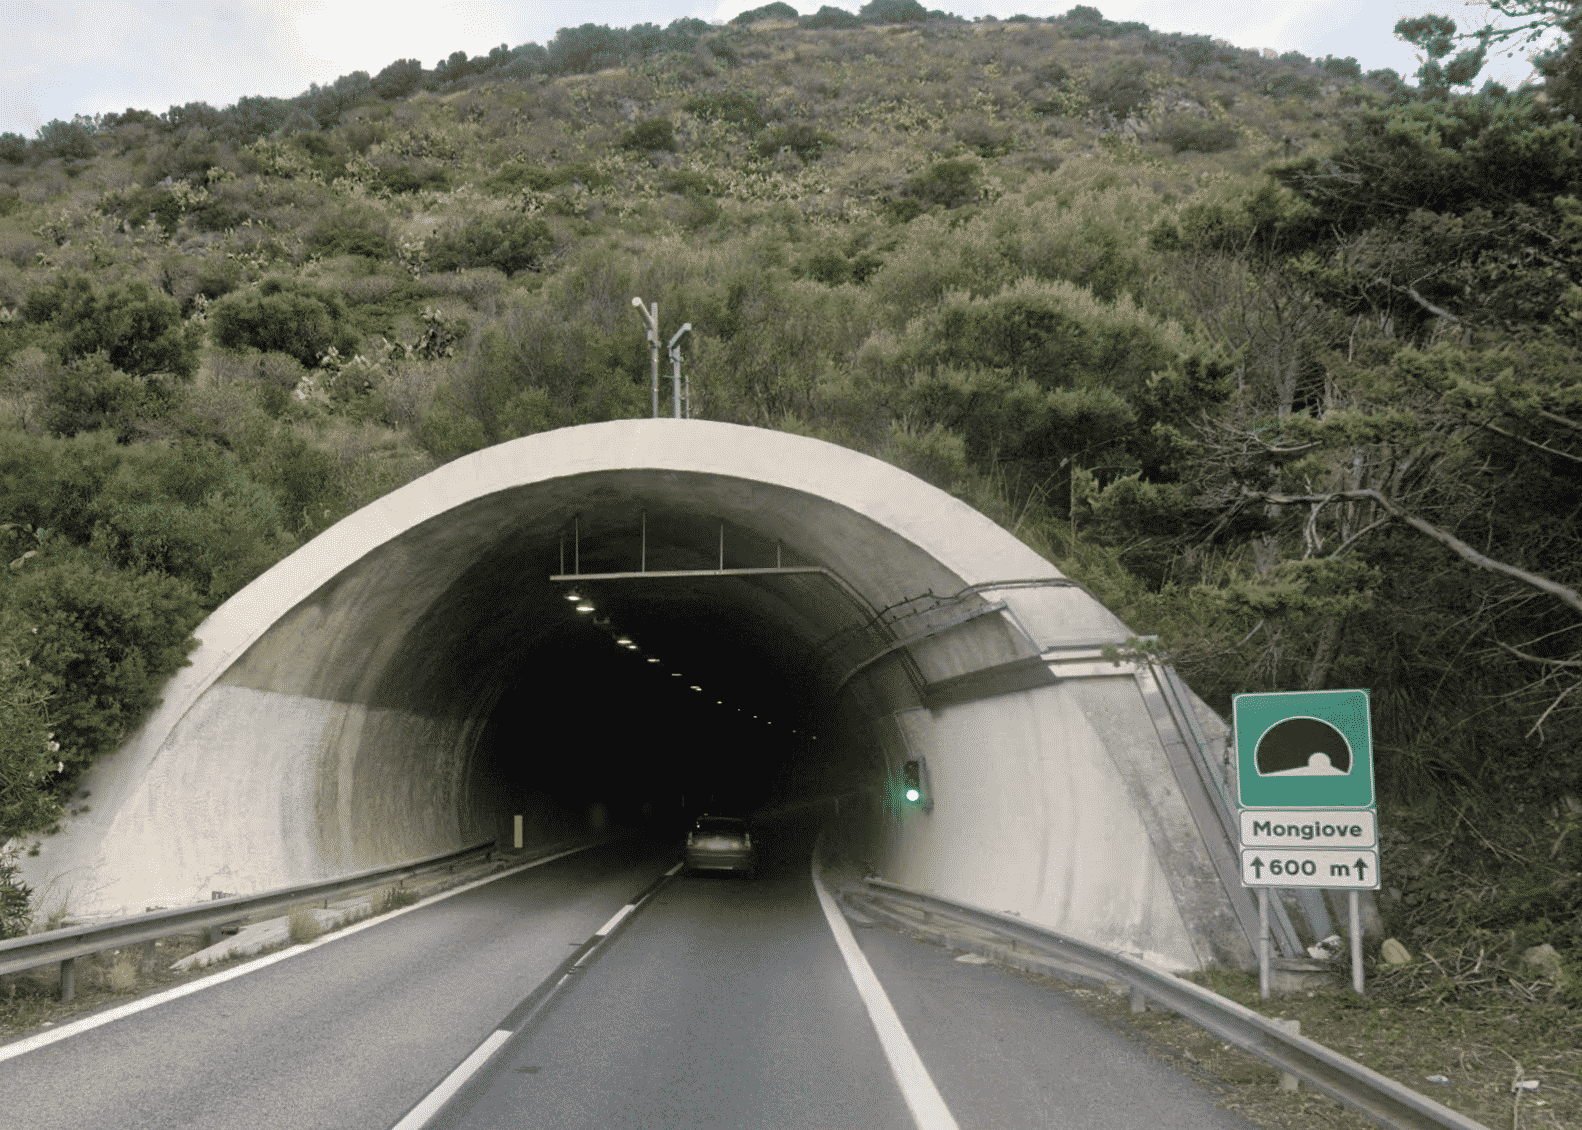 Autostrada A20 Messina-Palermo, previste deviazioni causa lavori: tutte le info utili